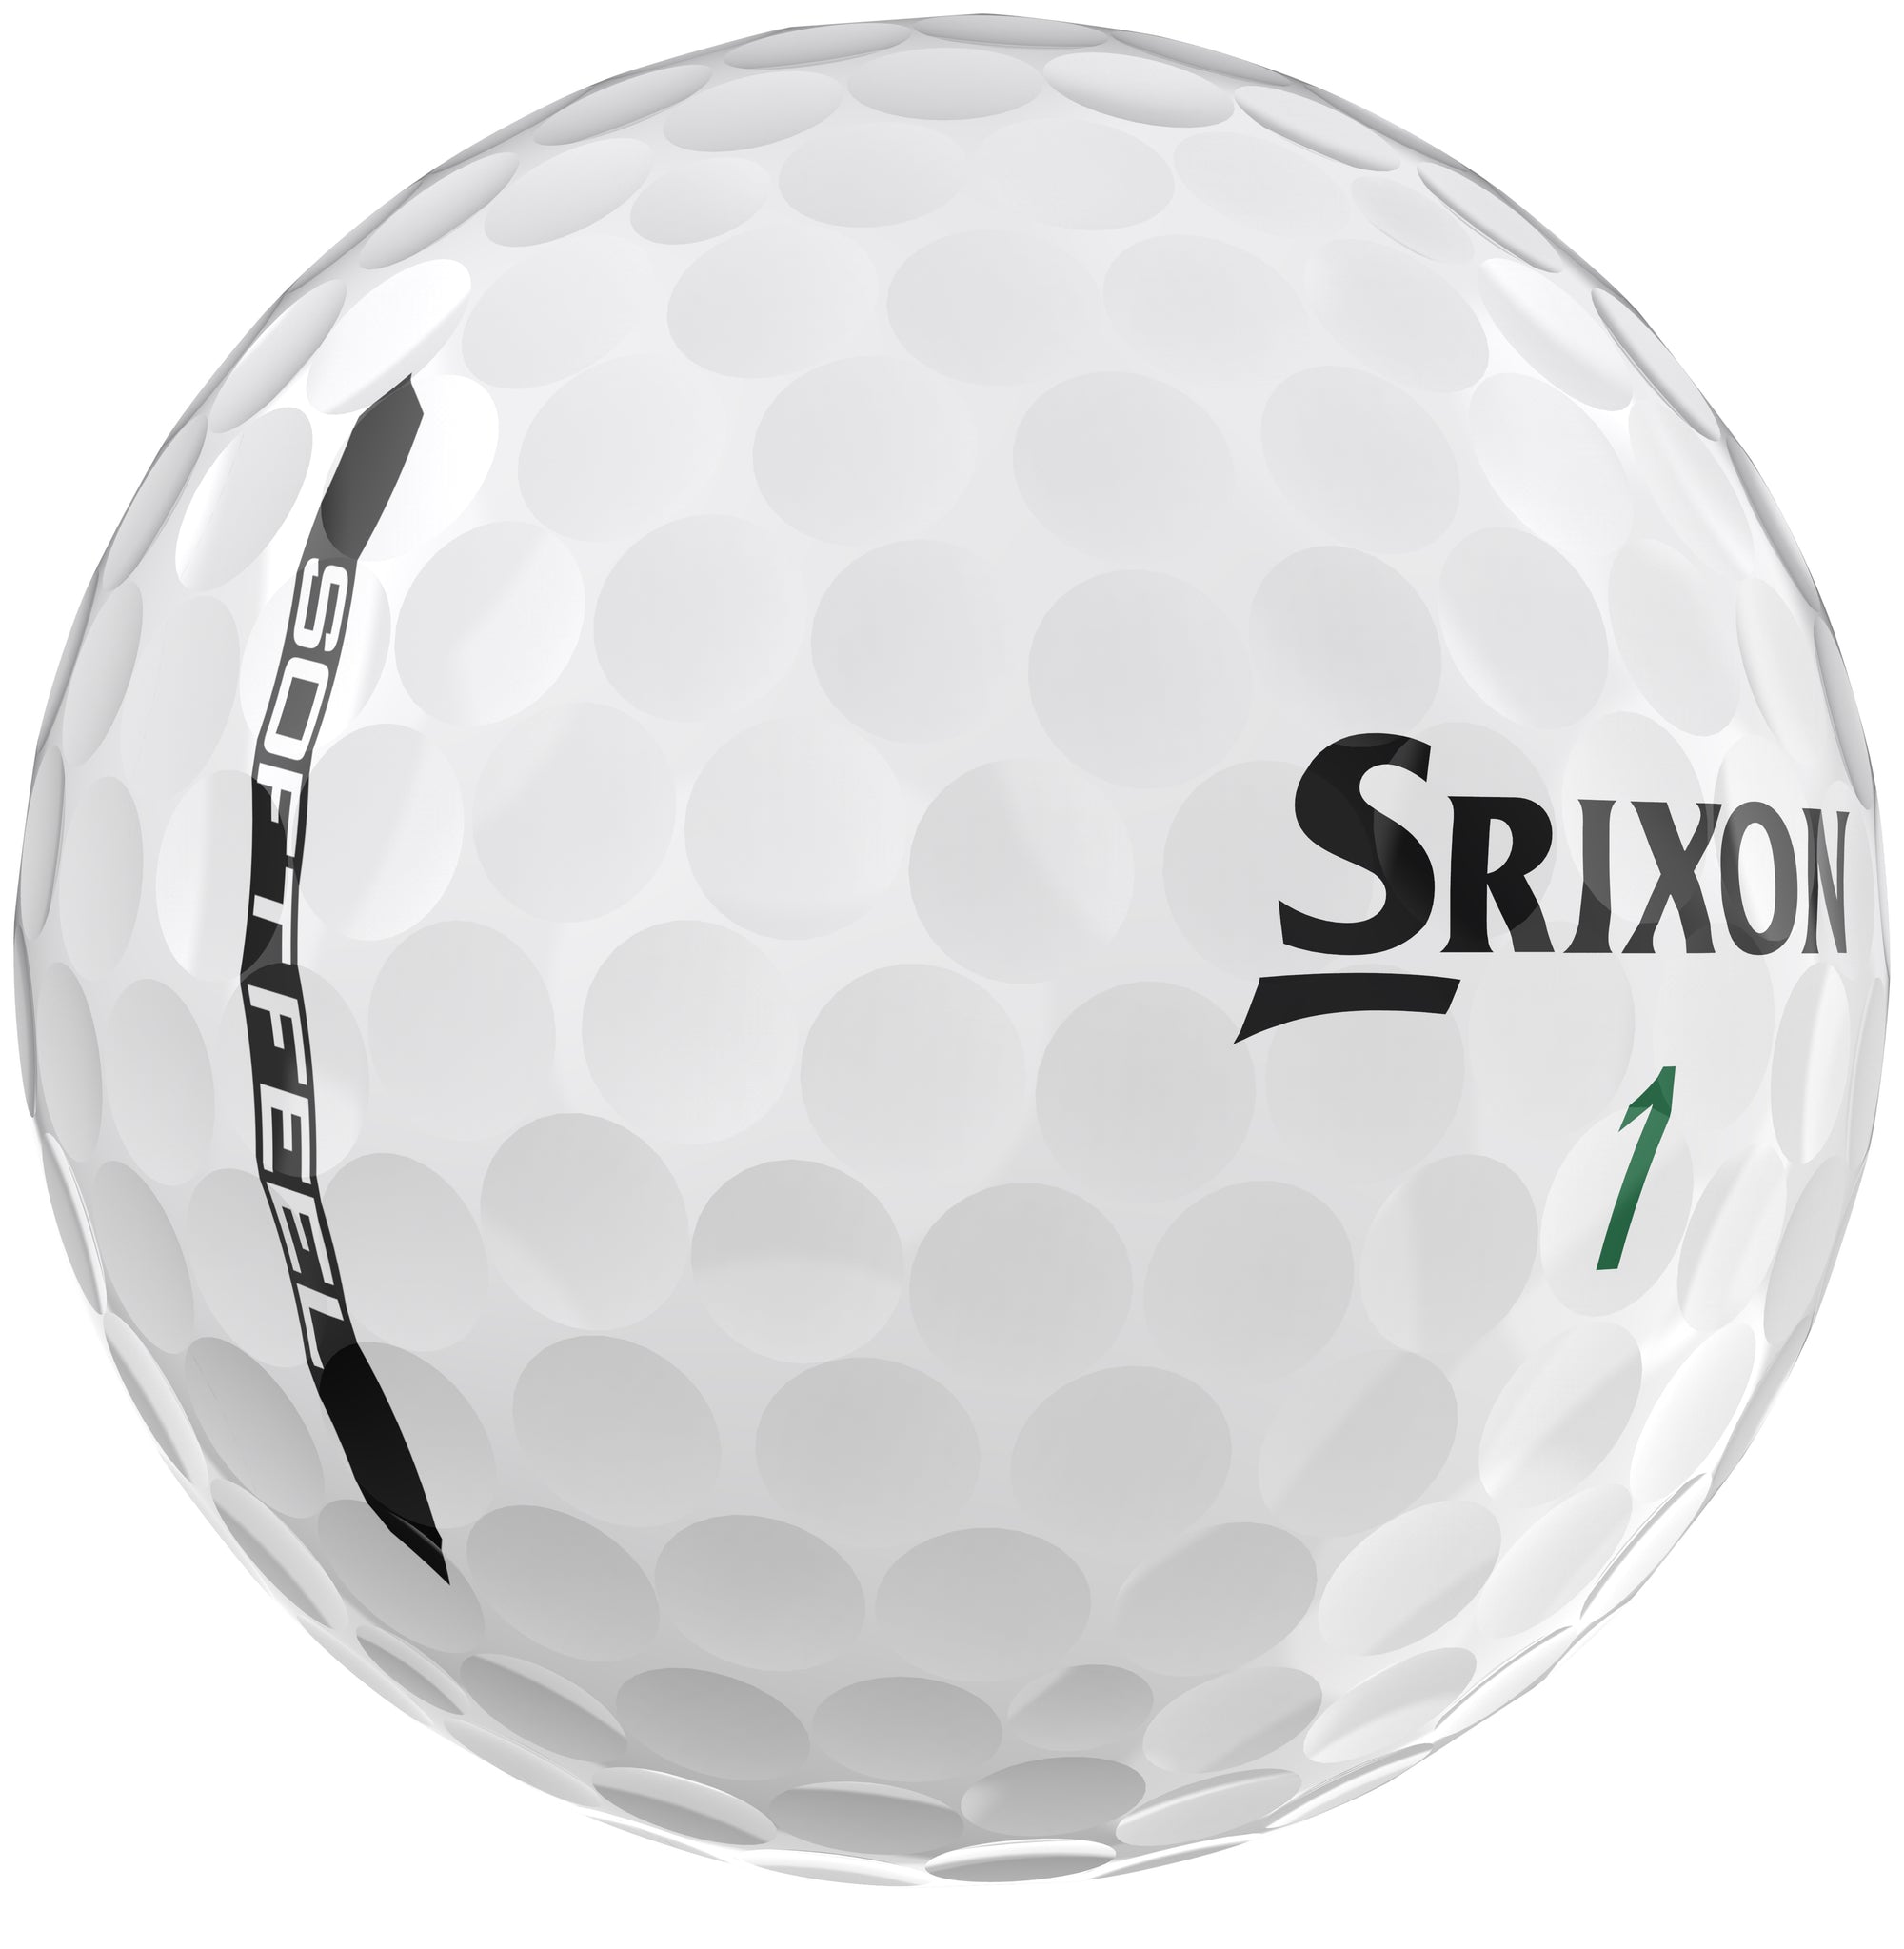 Srixon Soft Feel 13 White Golf Balls 1 Dozen